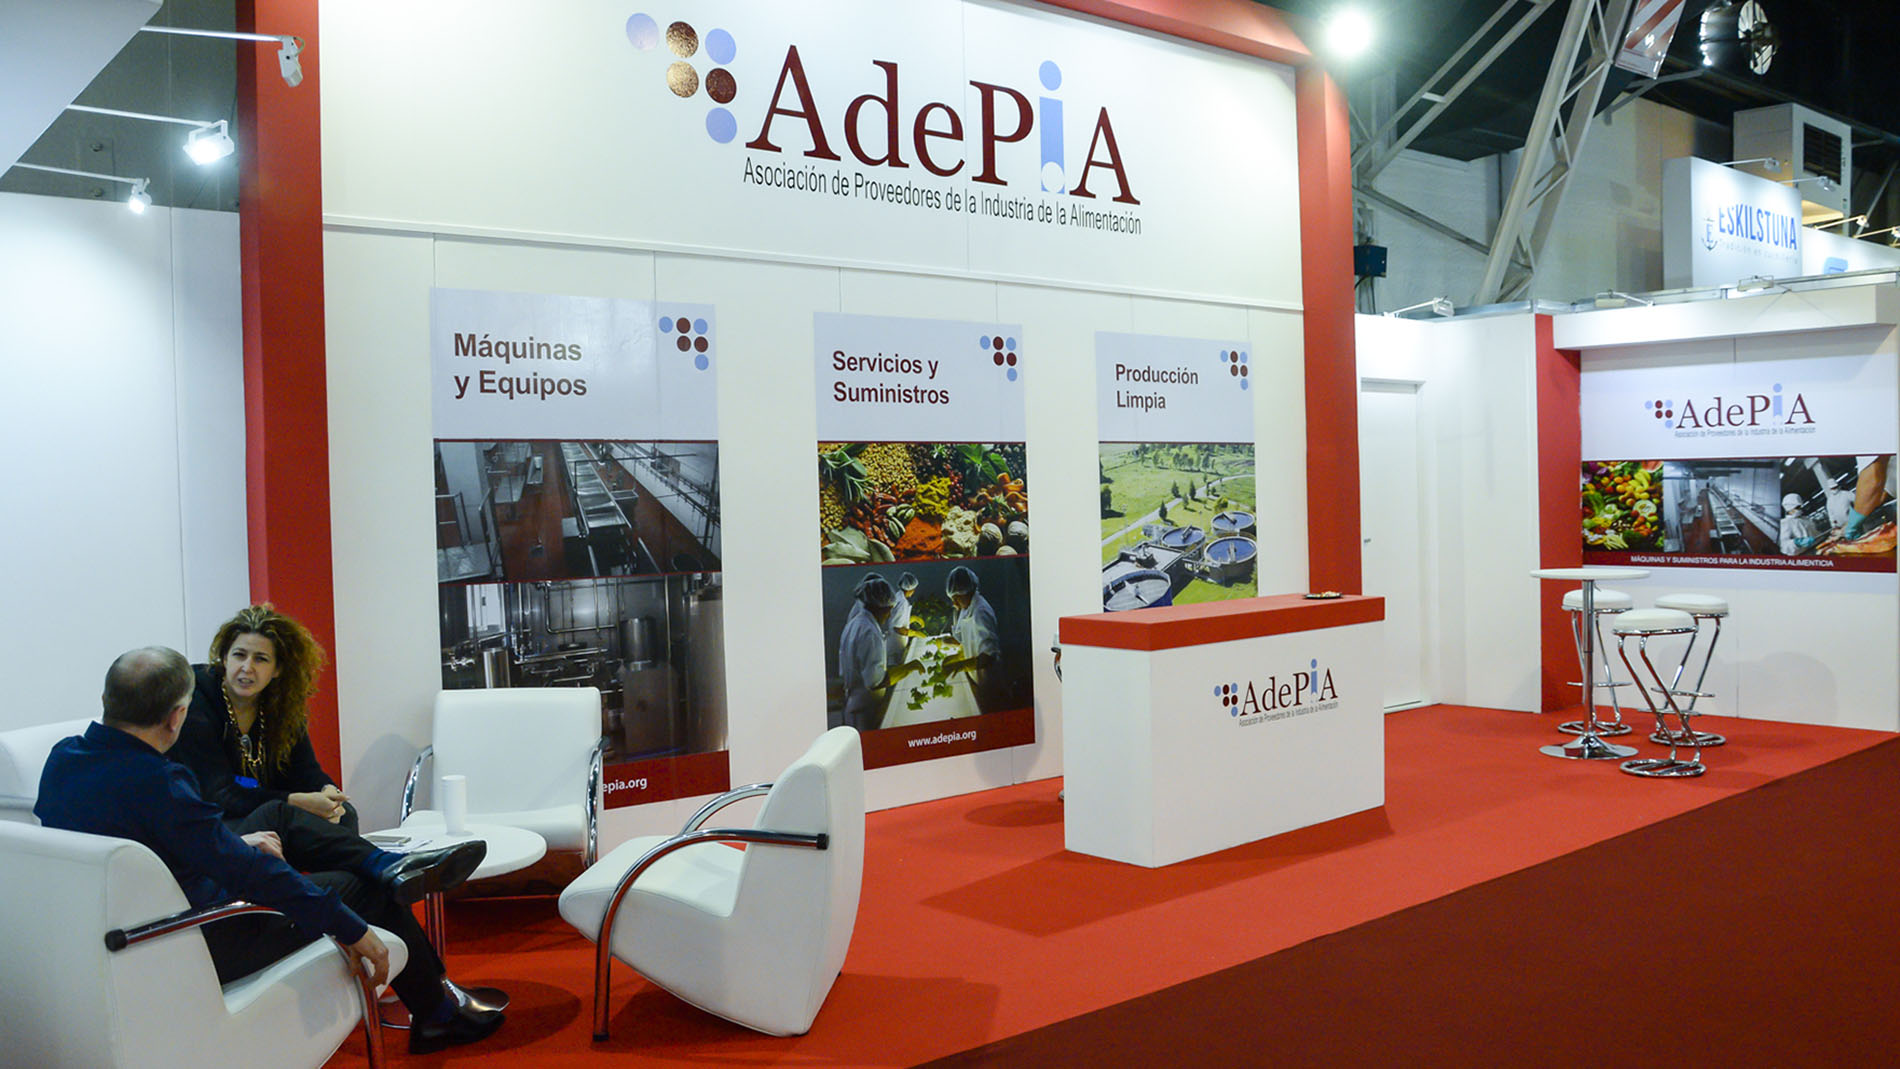 AdePIA - Asociación de Proveedores de la Industria de la Alimentación